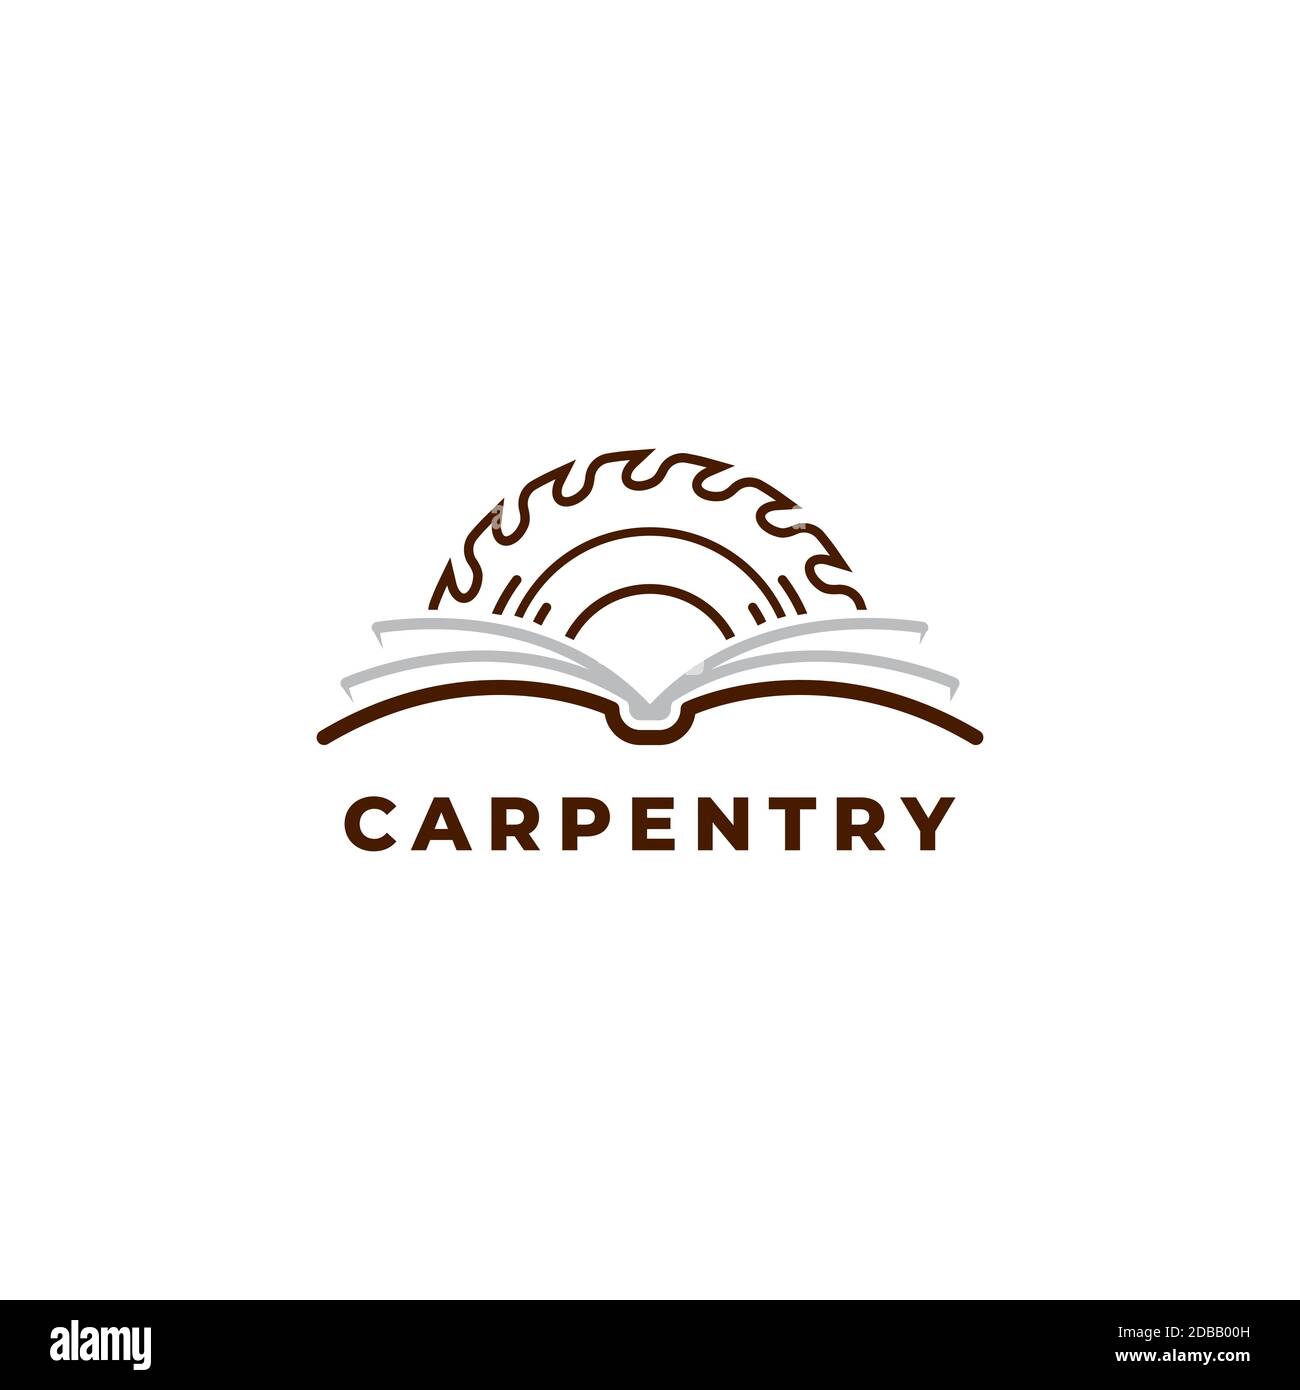 Carpentry book logo design symbol vector template Stock Vector